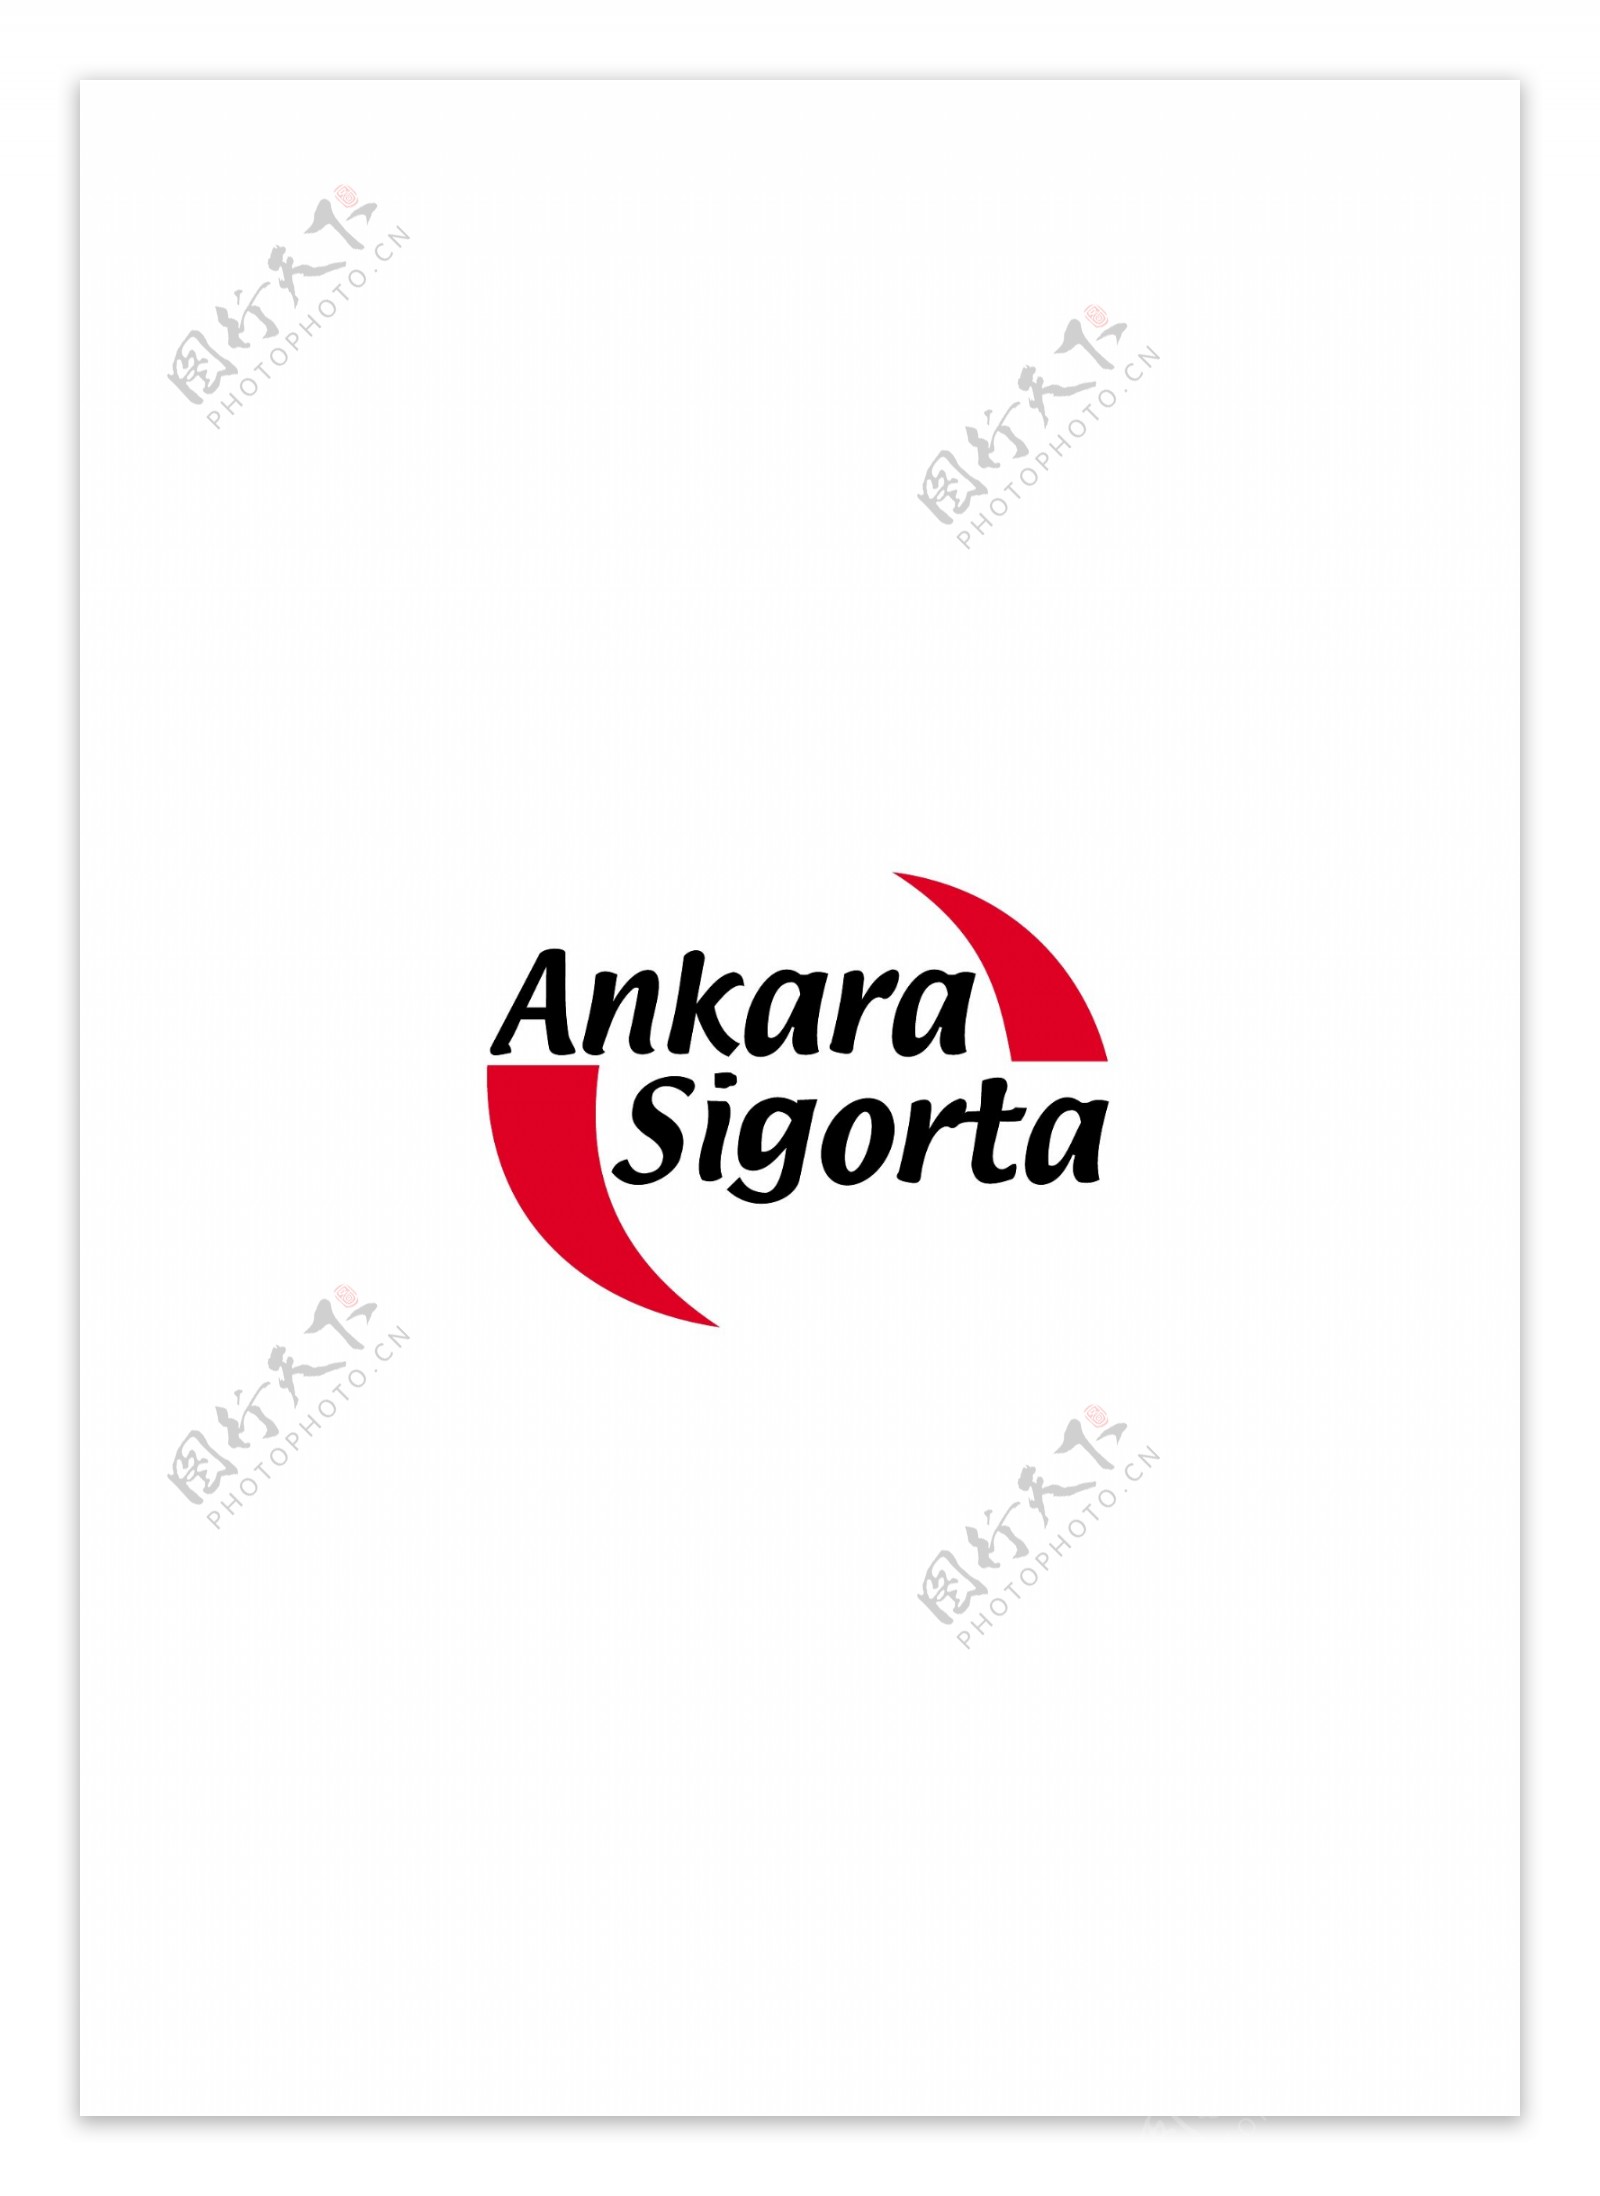 AnkaraSigortalogo设计欣赏AnkaraSigorta保险公司标志下载标志设计欣赏